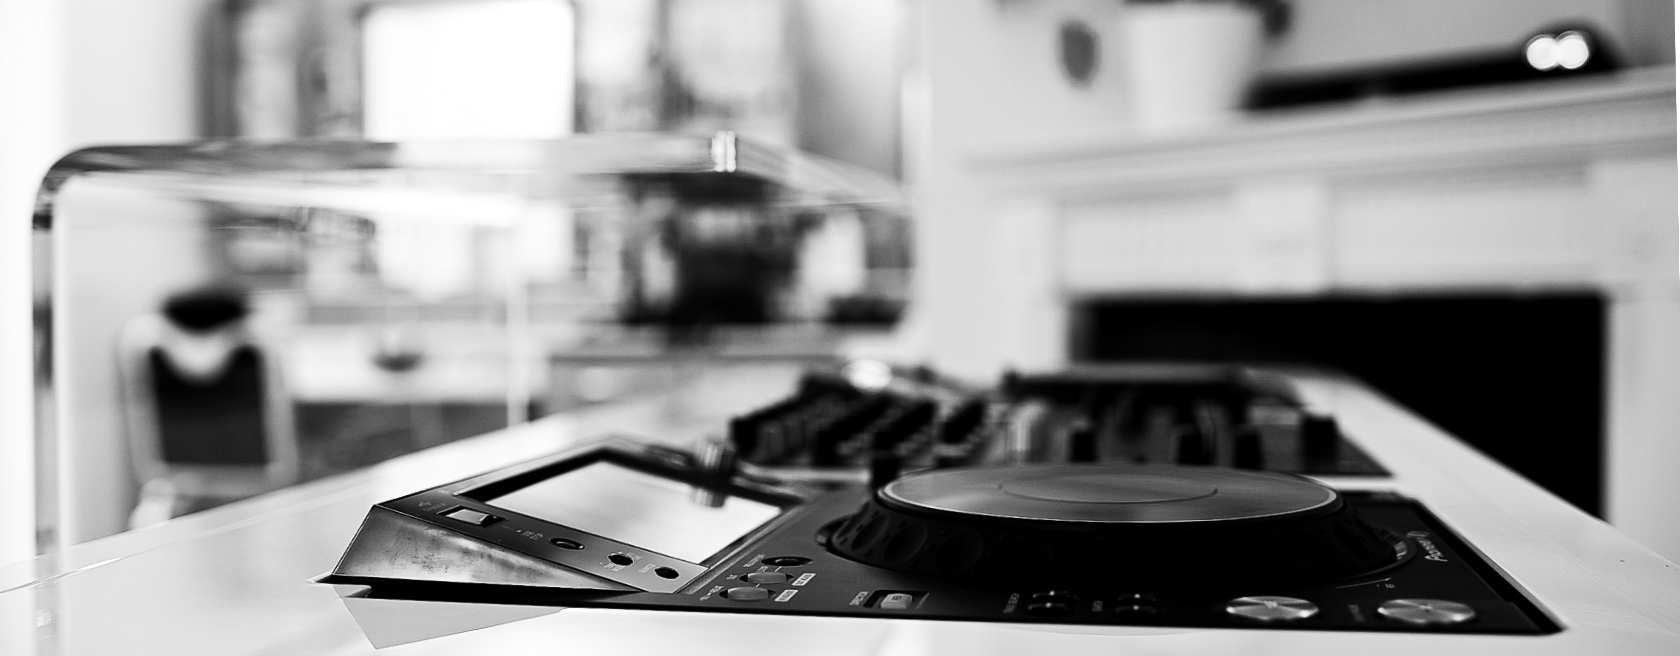 DJ oppsett med Pioneer mixer og dekk hos 1o1BARBERS